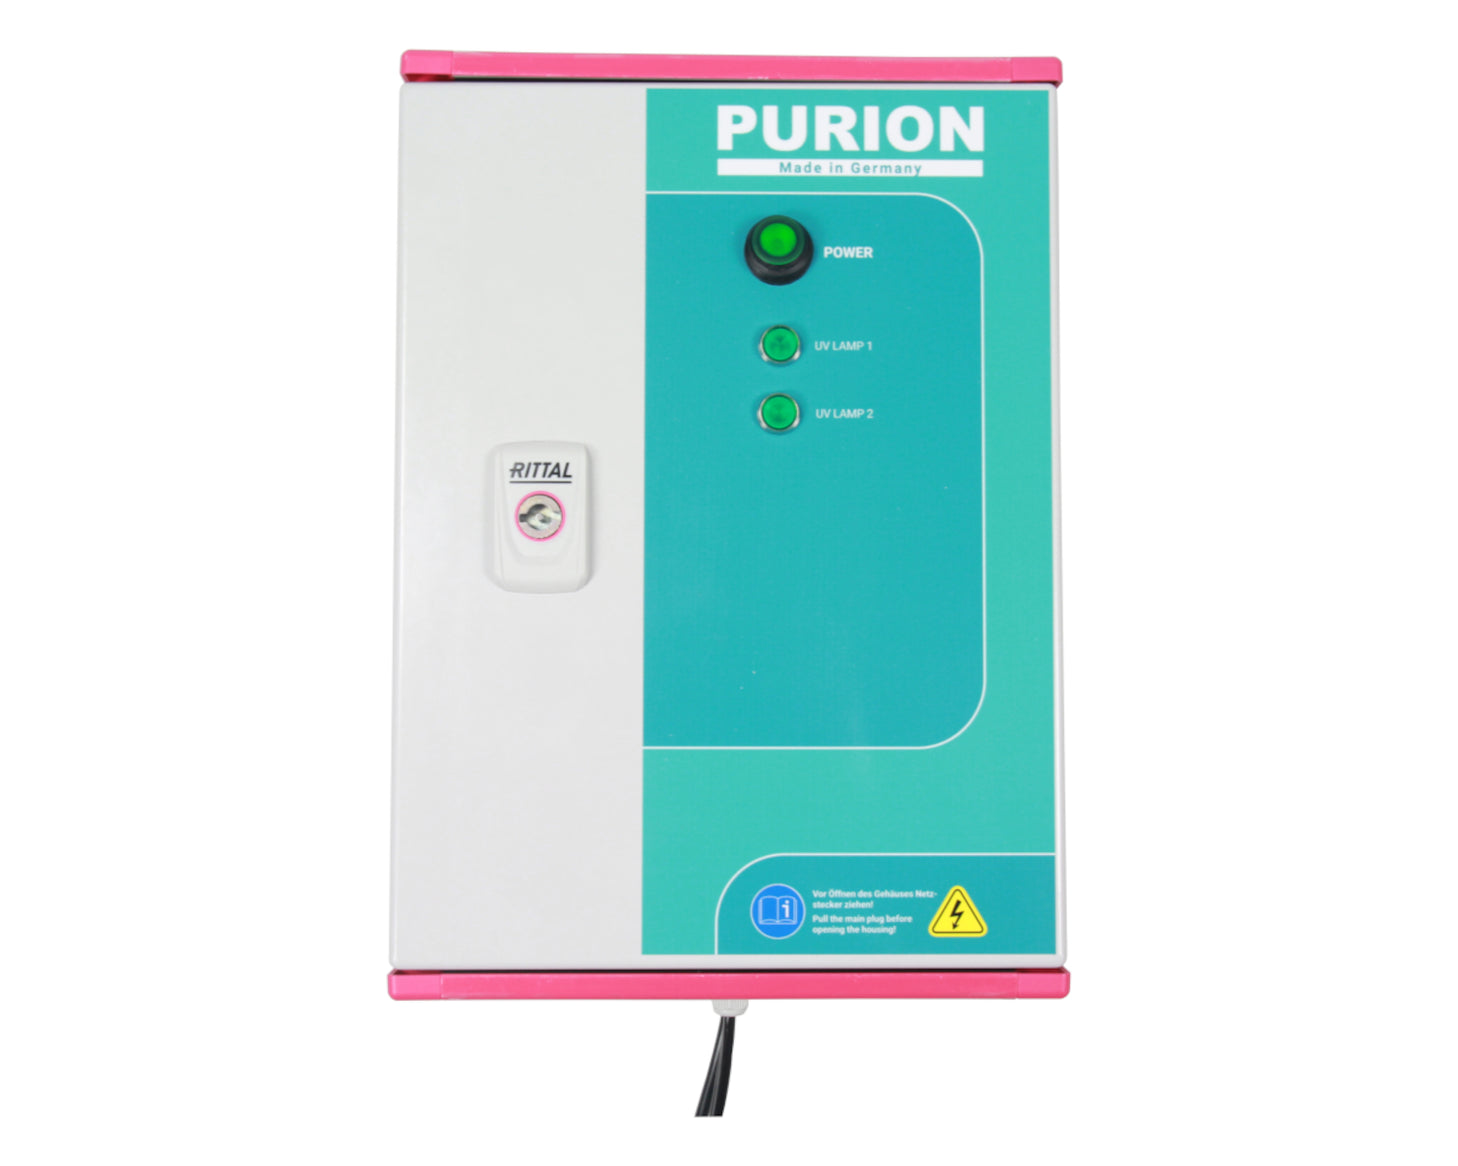 Die Hotels und Mehrfamilienhäuser haben nun die Möglichkeit, die sehr große UV-C-Desinfektionsanlage PURION 2500 90 W DUAL Basic der PURION GmbH zur effektiven Desinfektion einzusetzen.